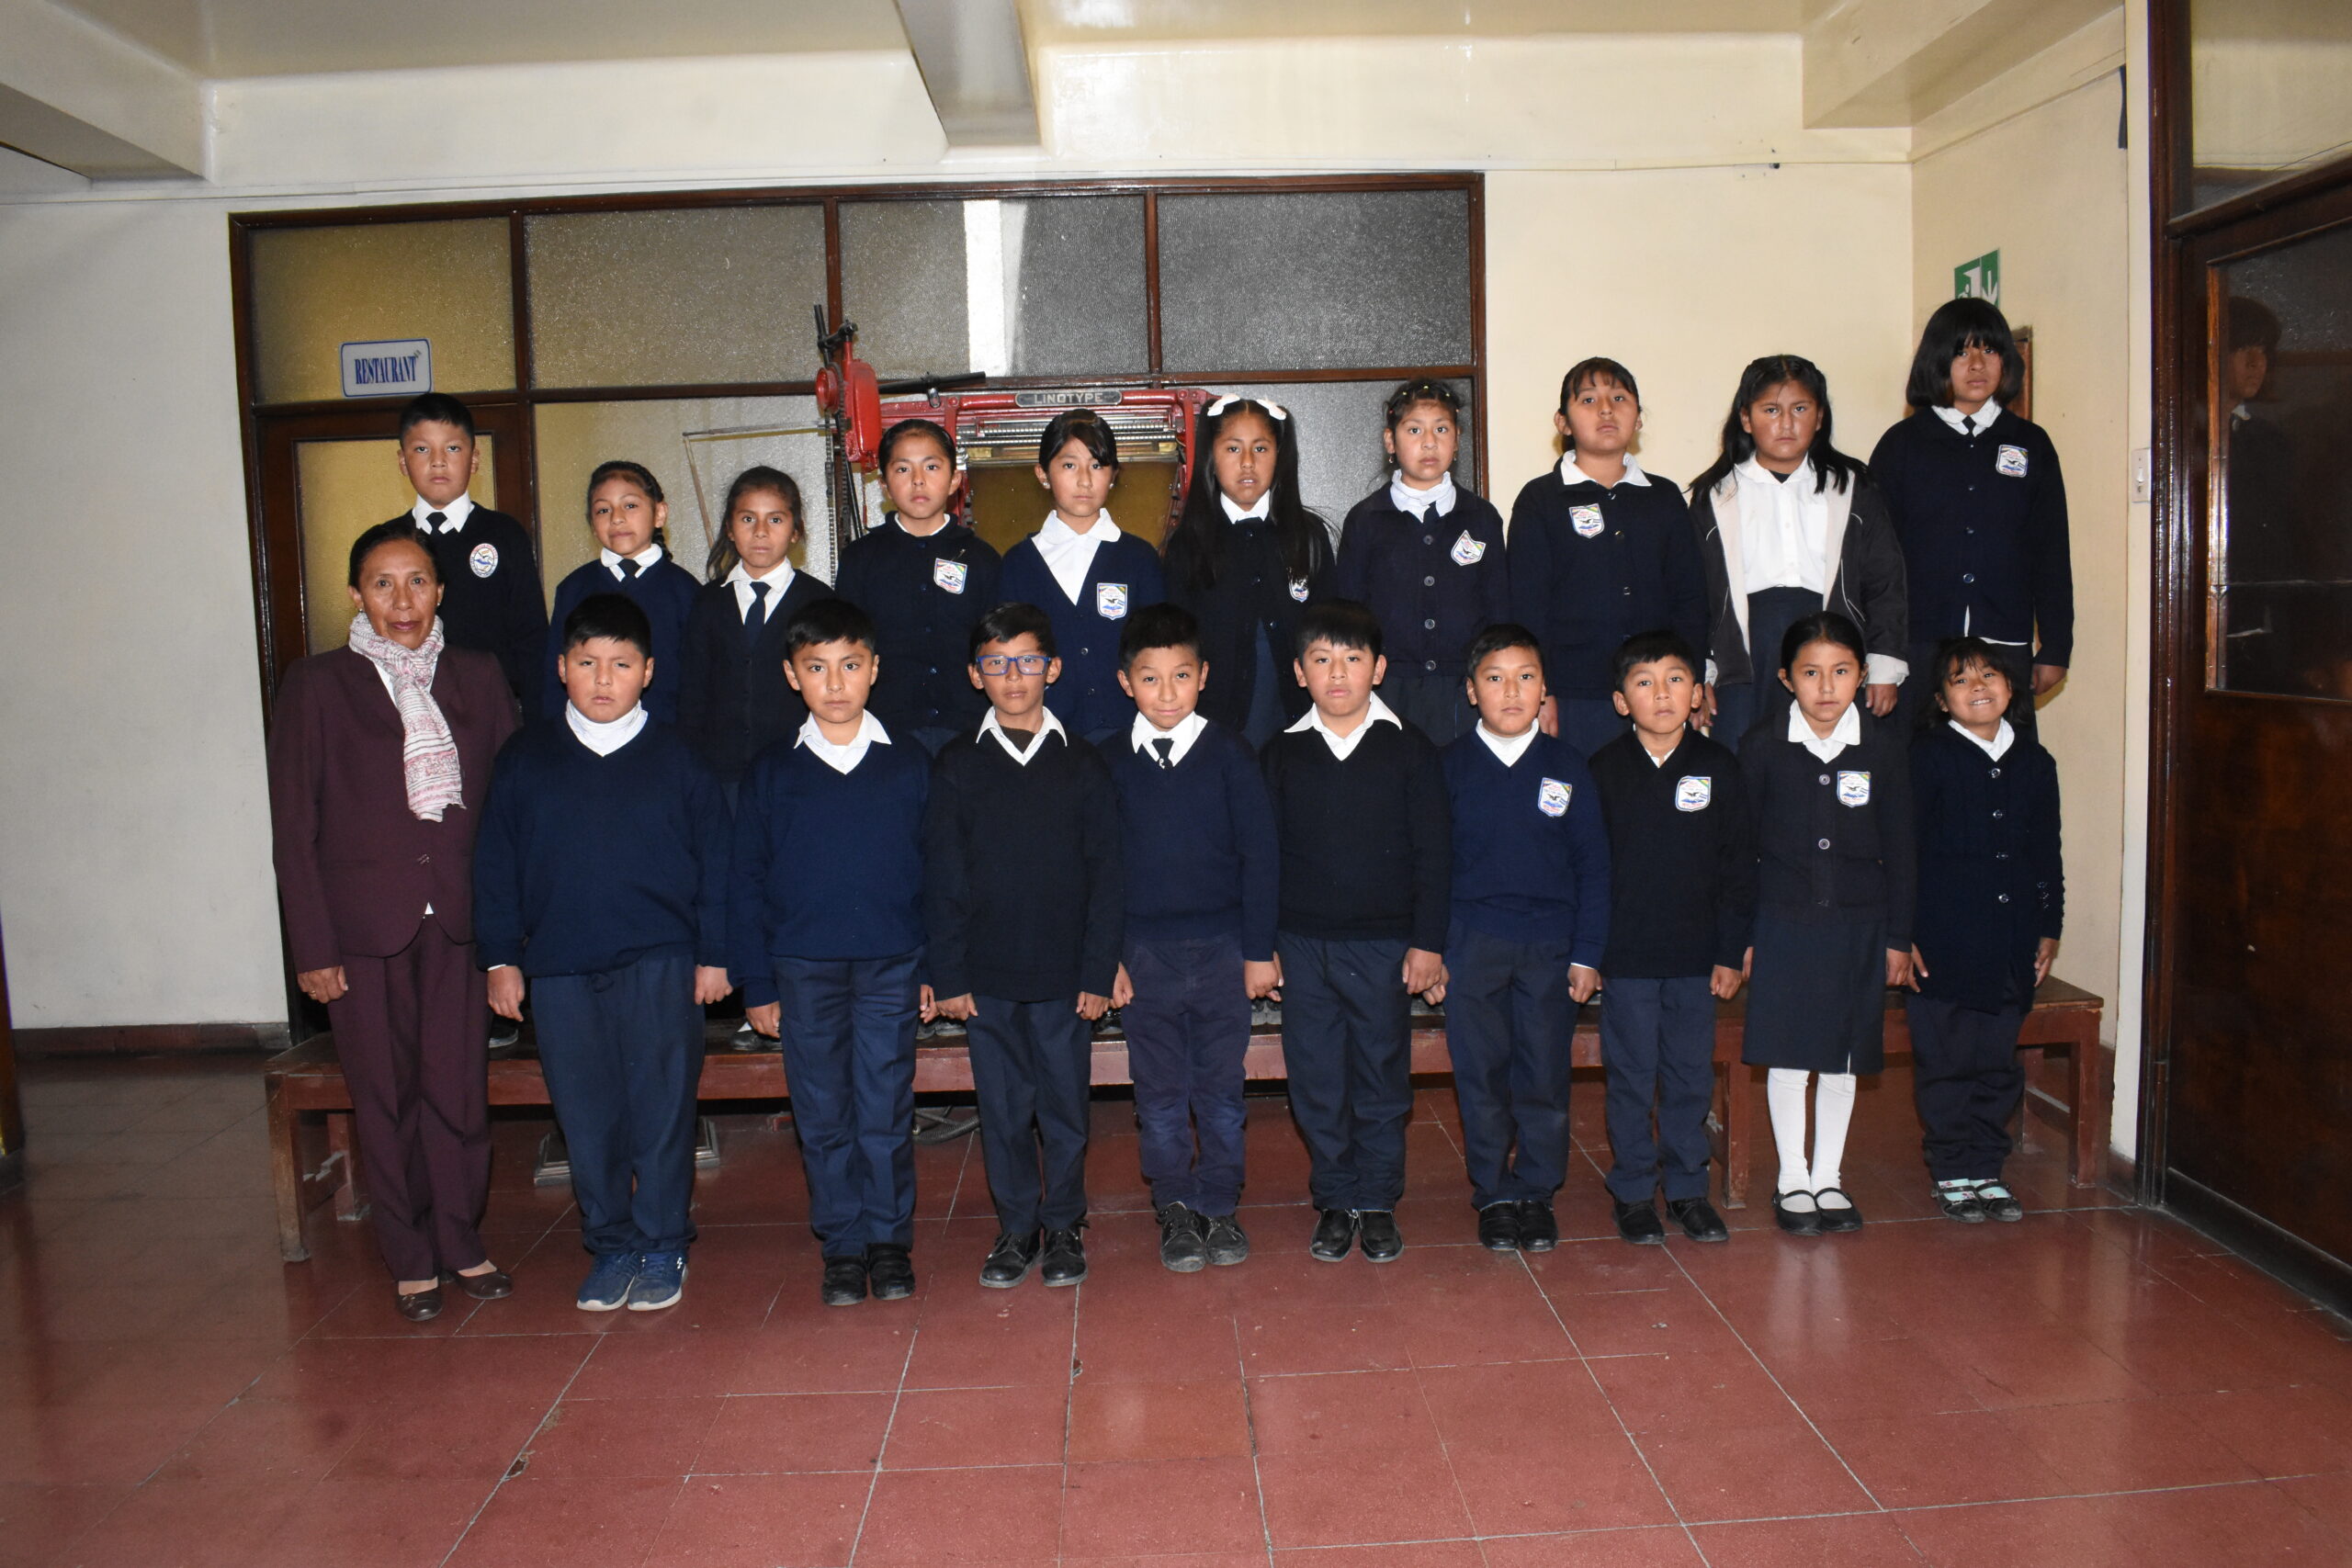 Estudiantes de la Unidad Educativa Pablo Iturri Jurado “A” visitaron EL DIARIO